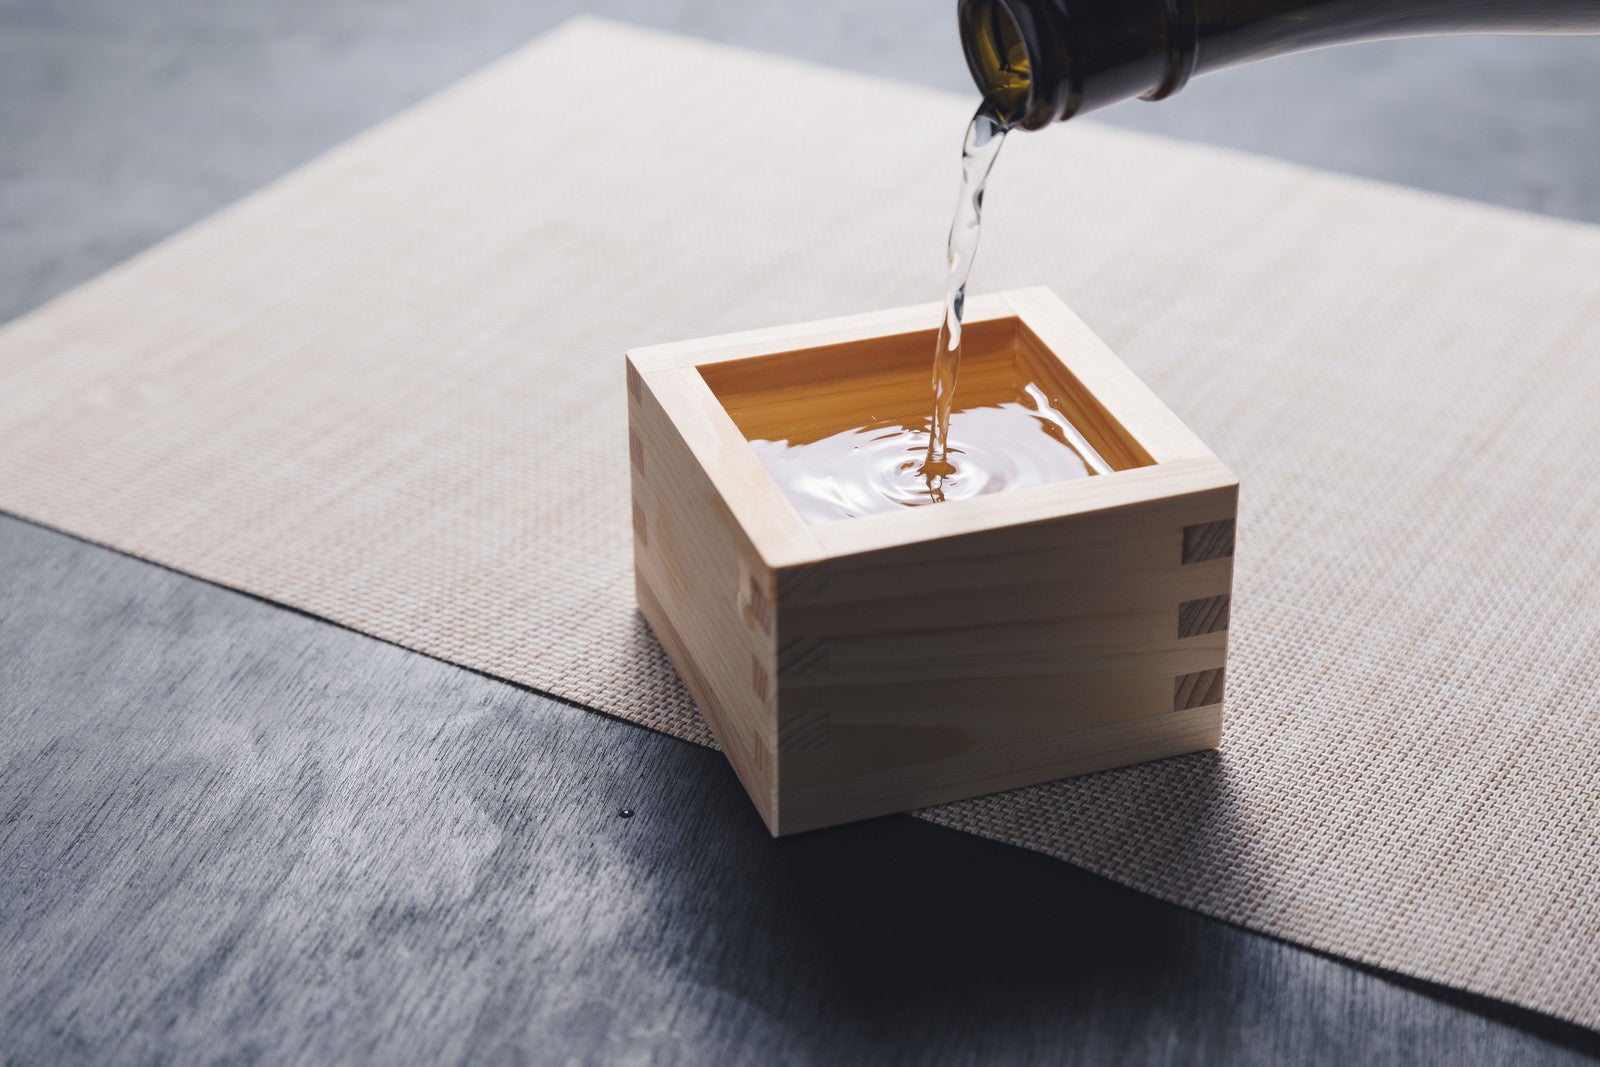 「升に注ががれる日本酒の様子」の写真